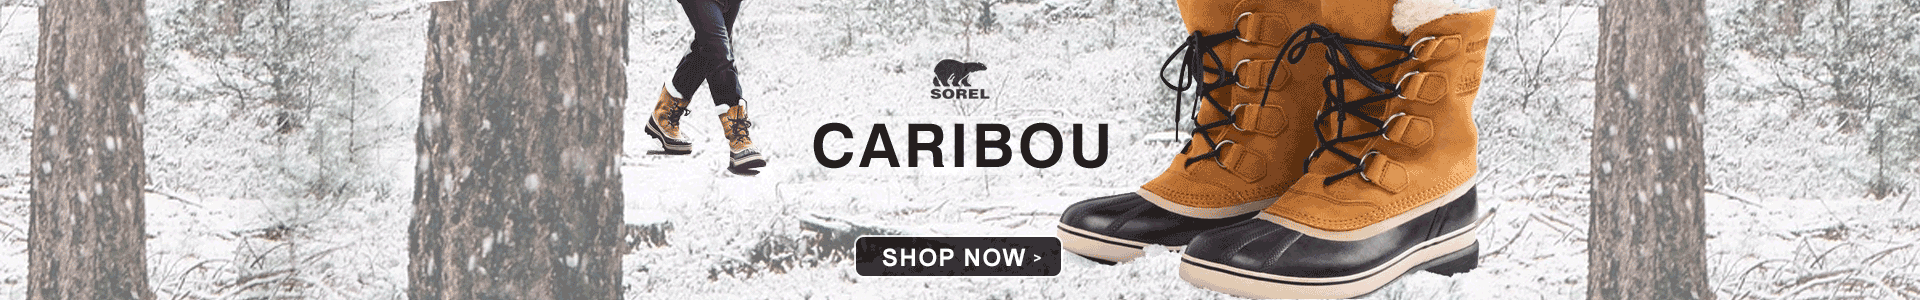 Shop Caribou